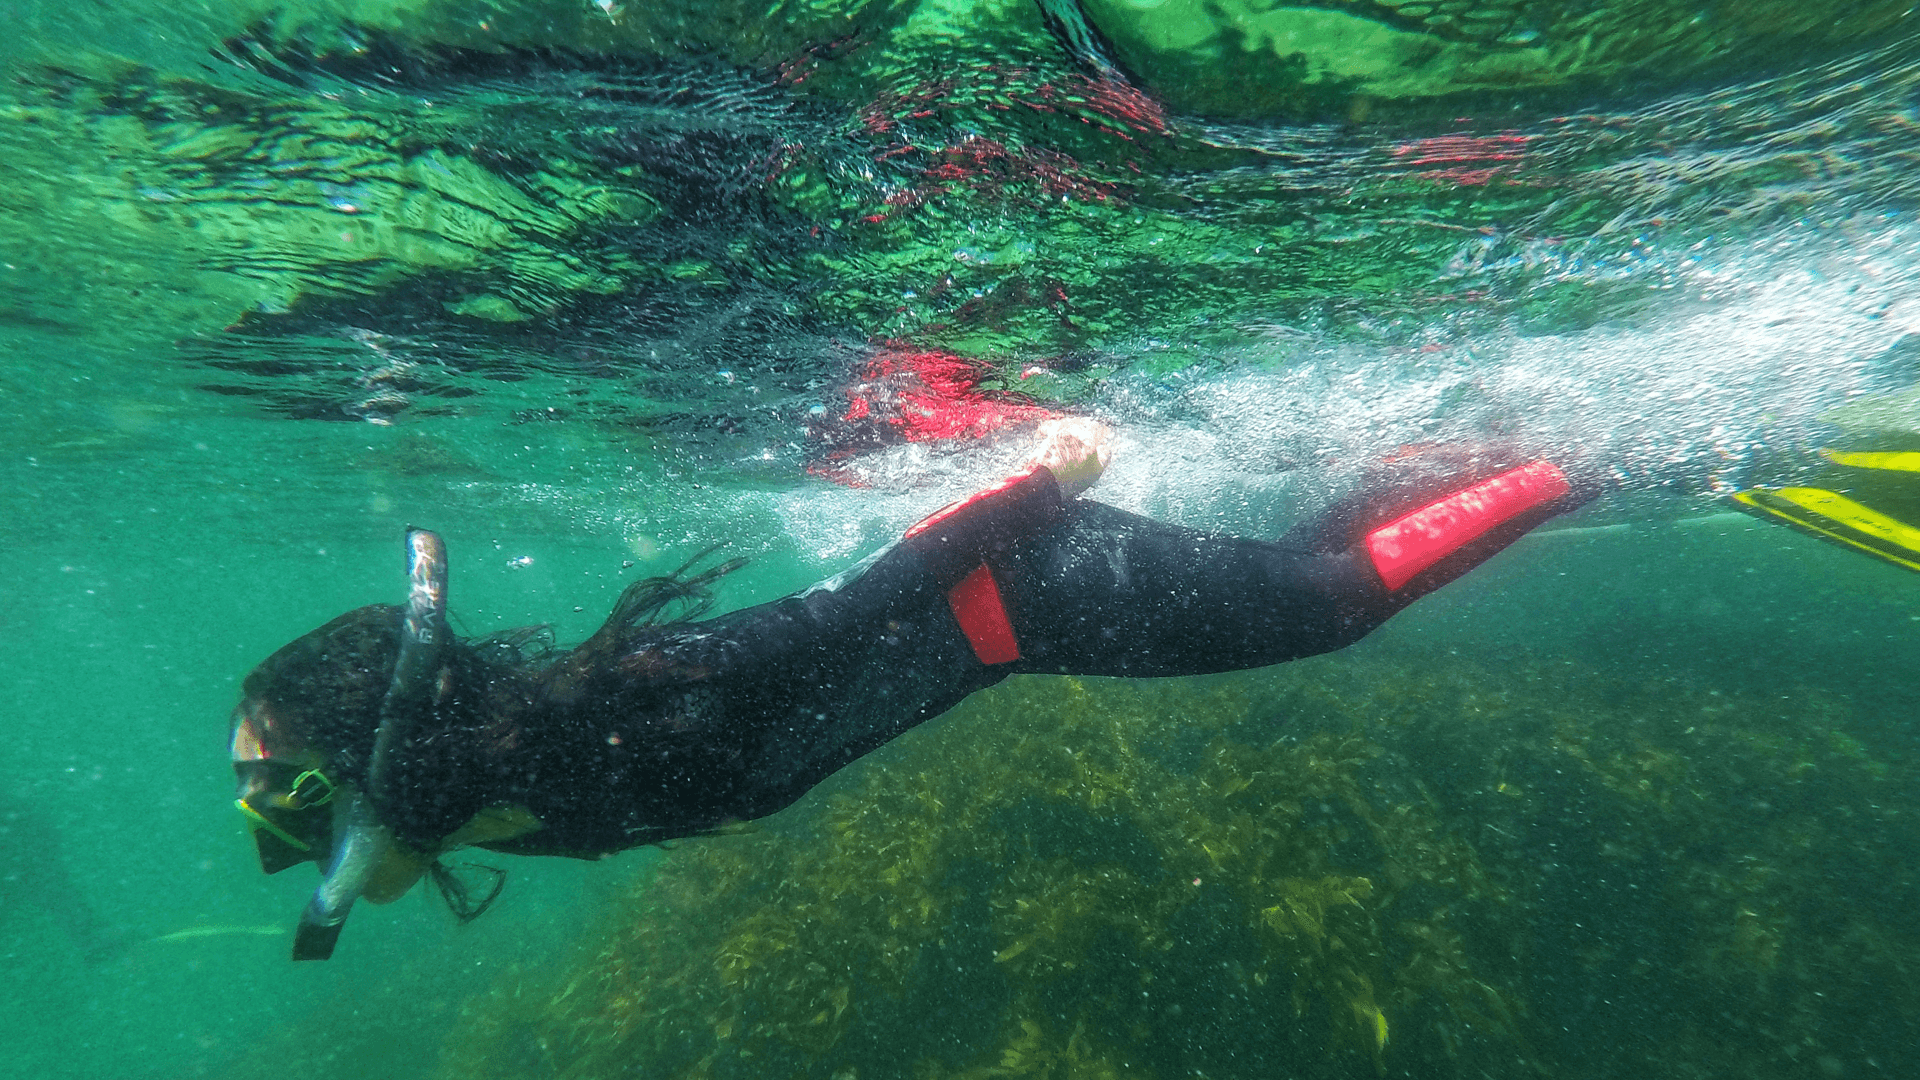 Mat_Amanda_amanda snorkelling in wetsuit in green water